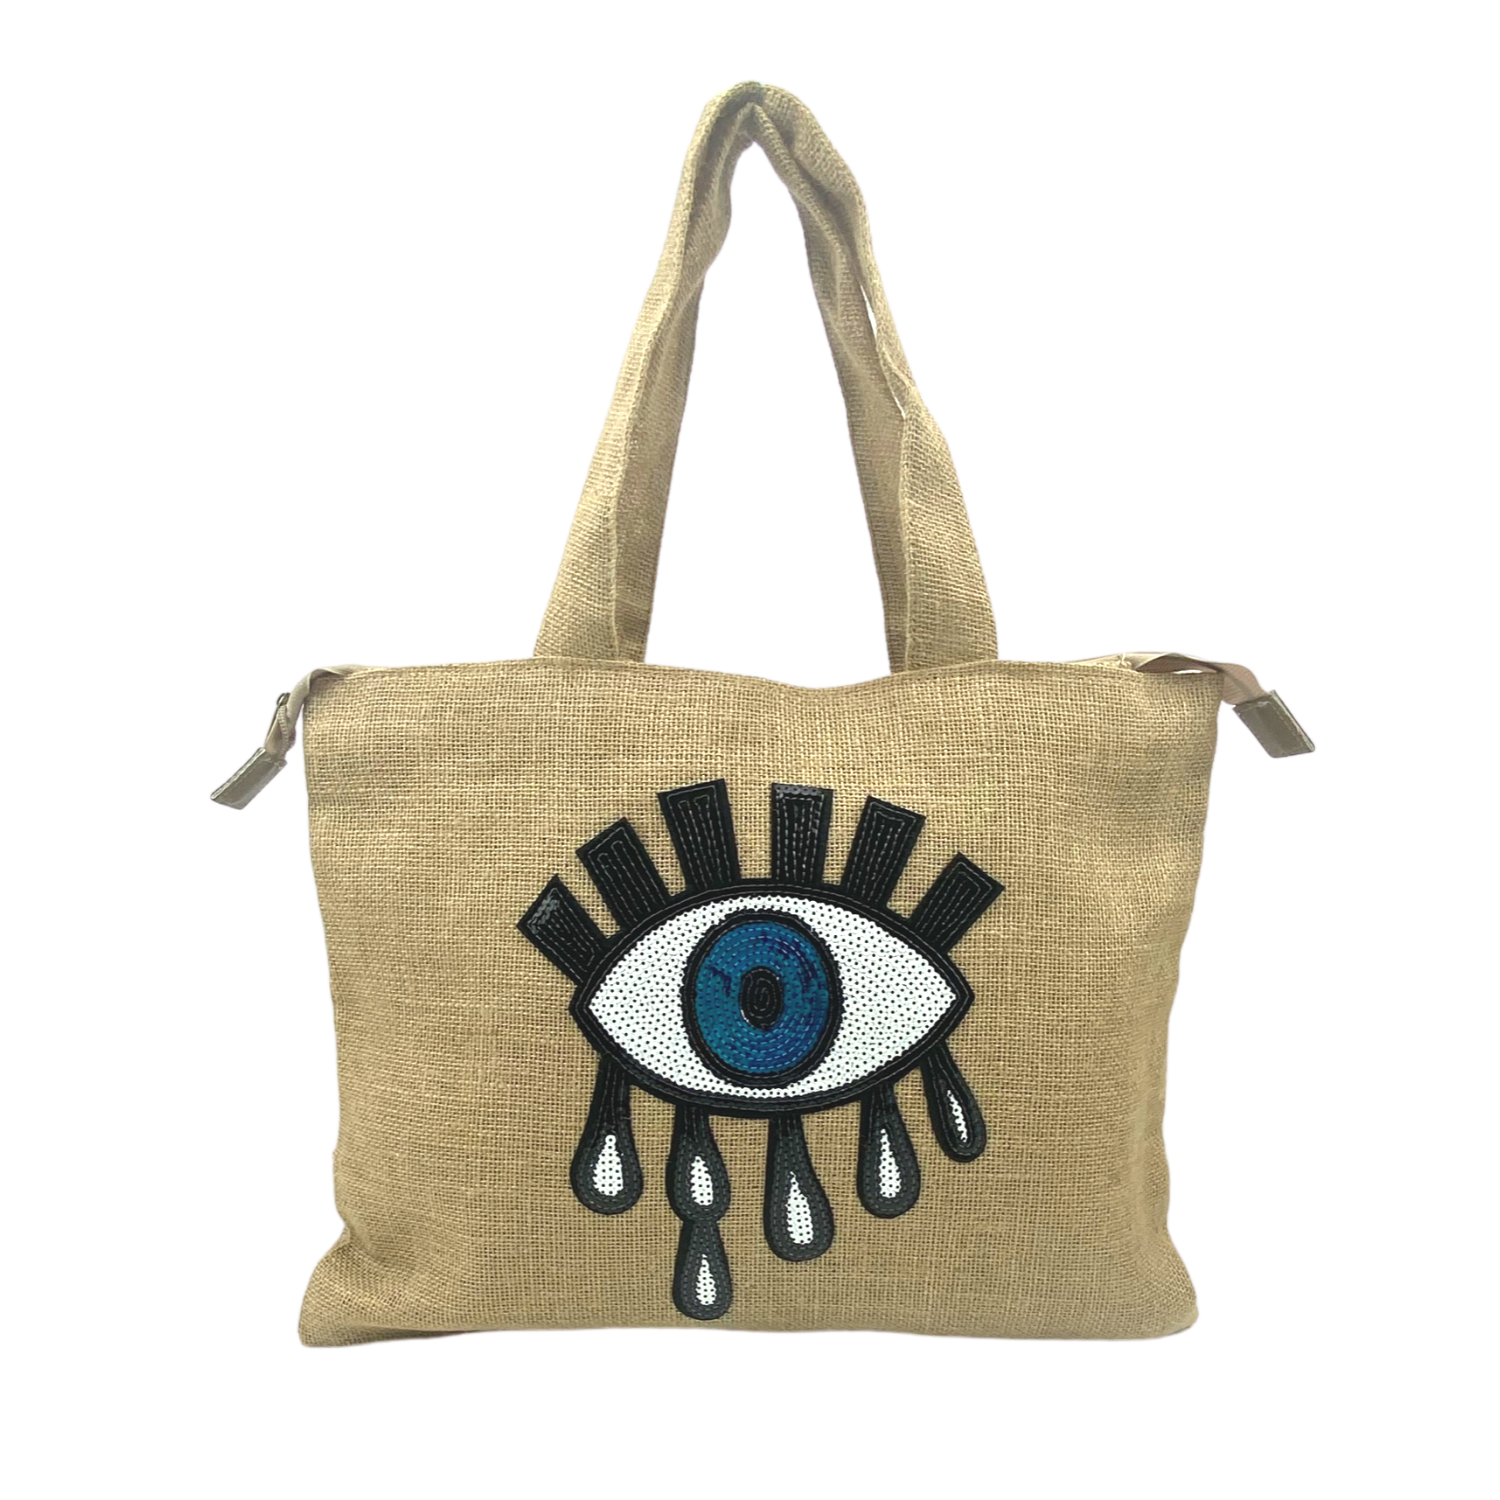 Tear Eye Tote Naturel Jute Burlap Women Bags